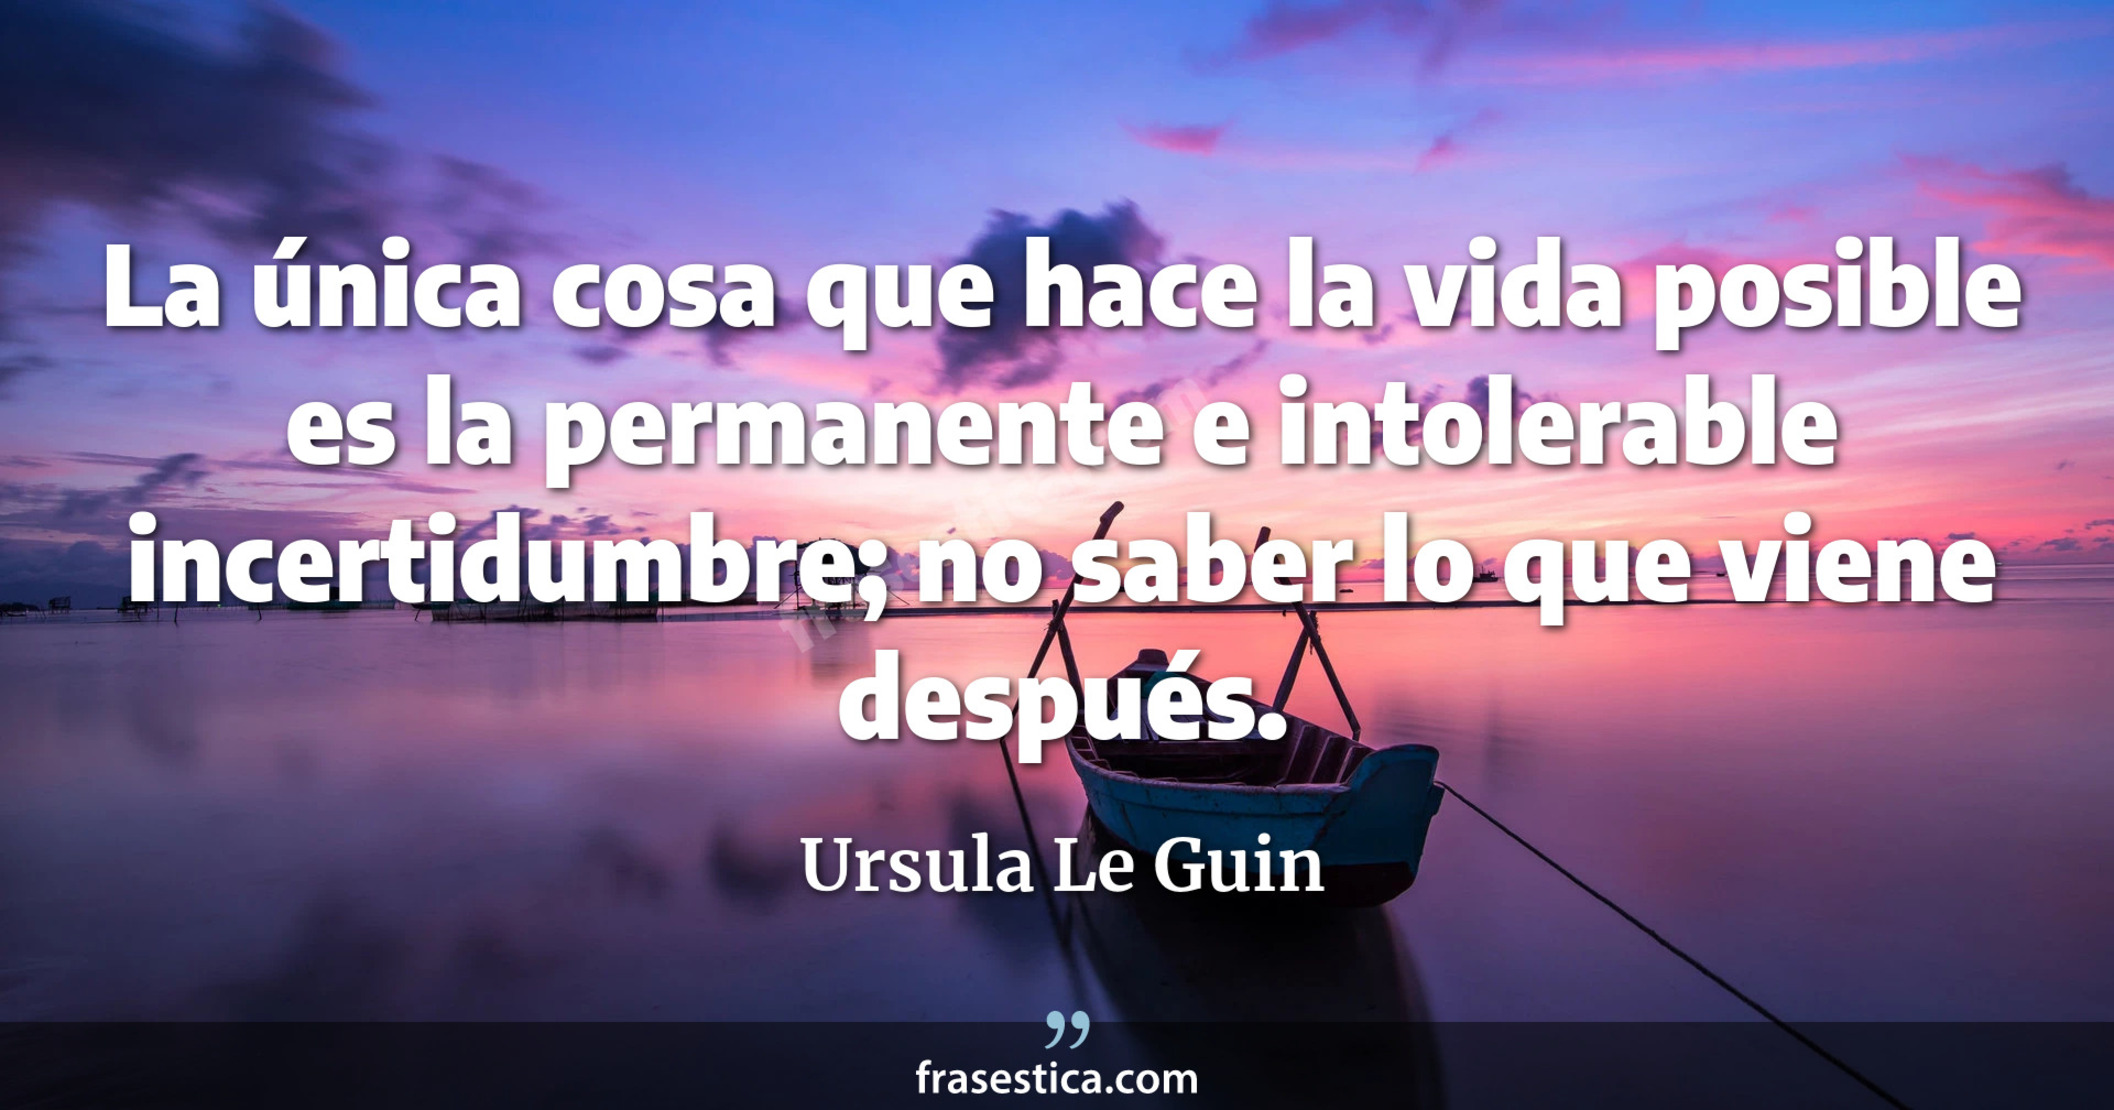 La única cosa que hace la vida posible es la permanente e intolerable incertidumbre; no saber lo que viene después. - Ursula Le Guin